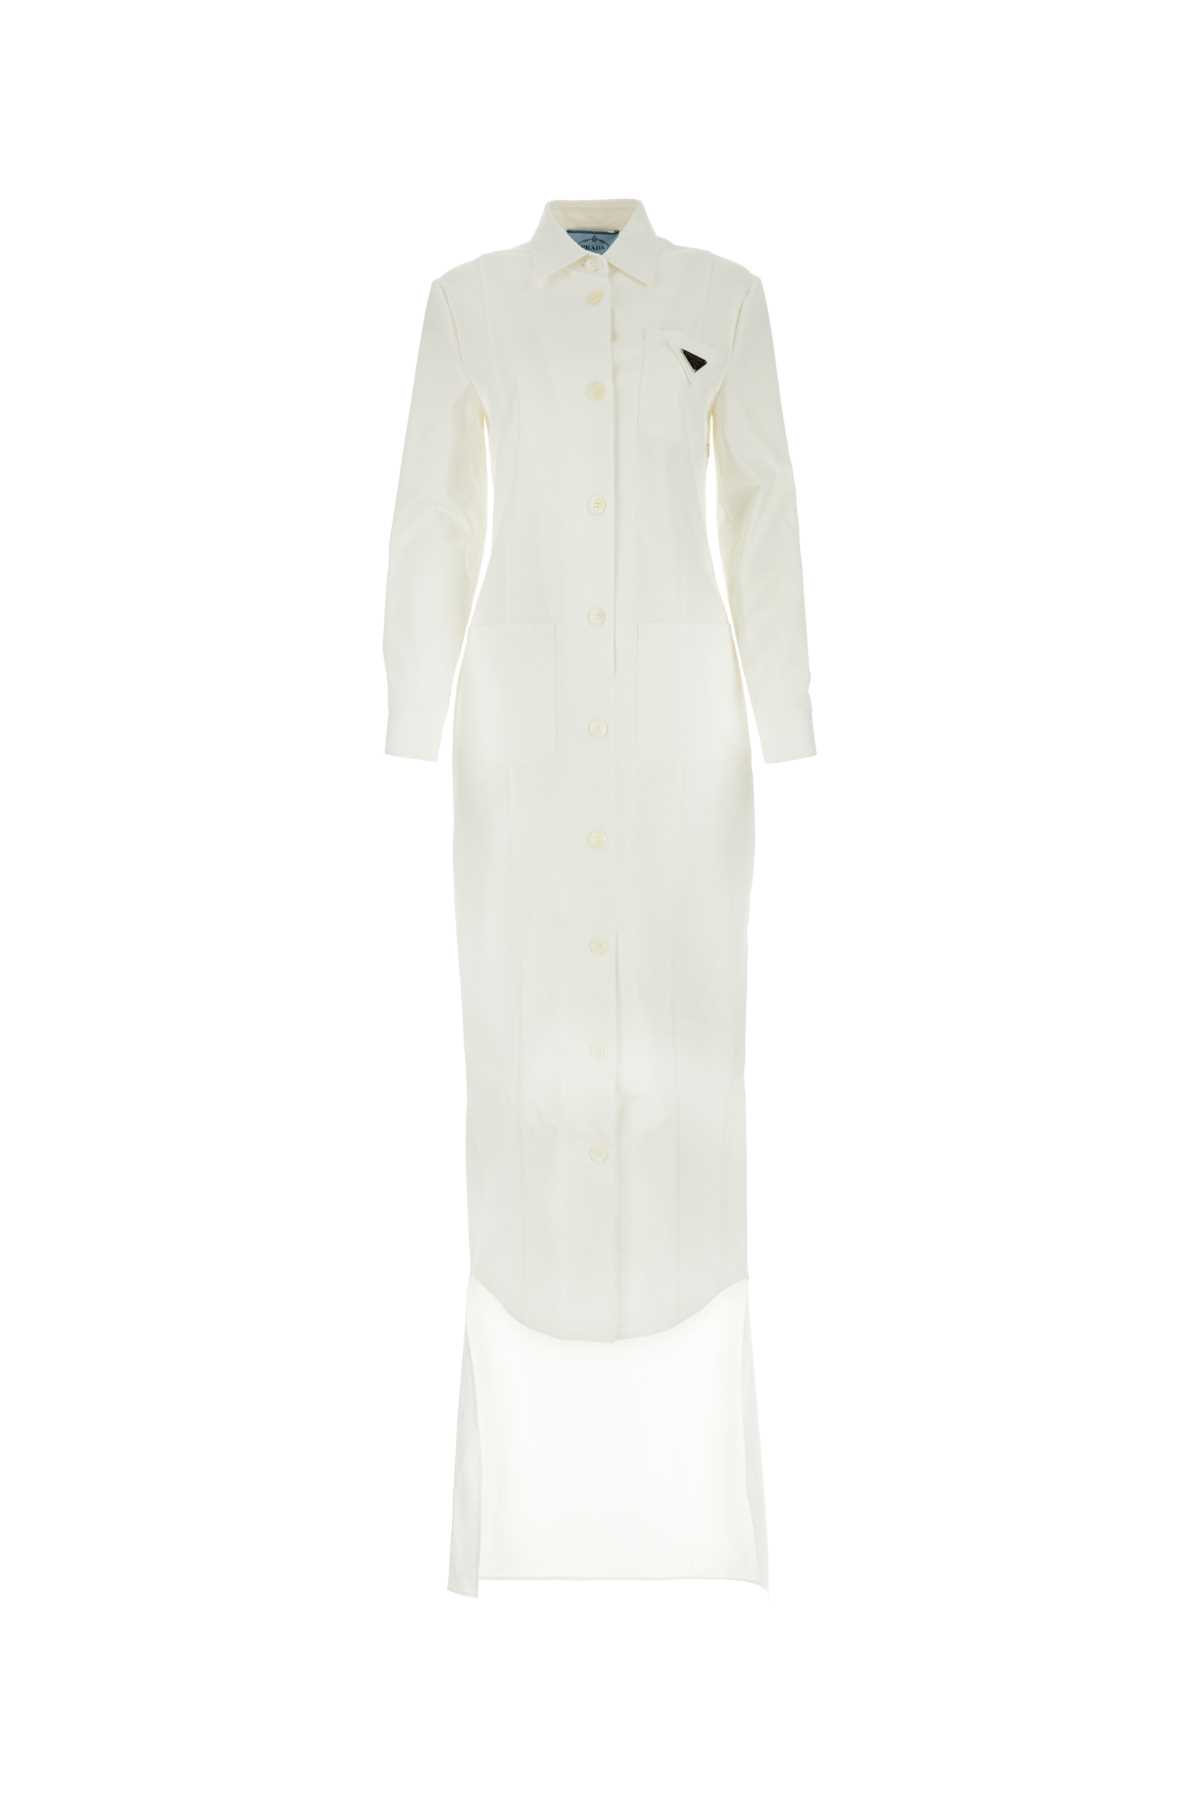 Prada White Gabardine Shirt Dress